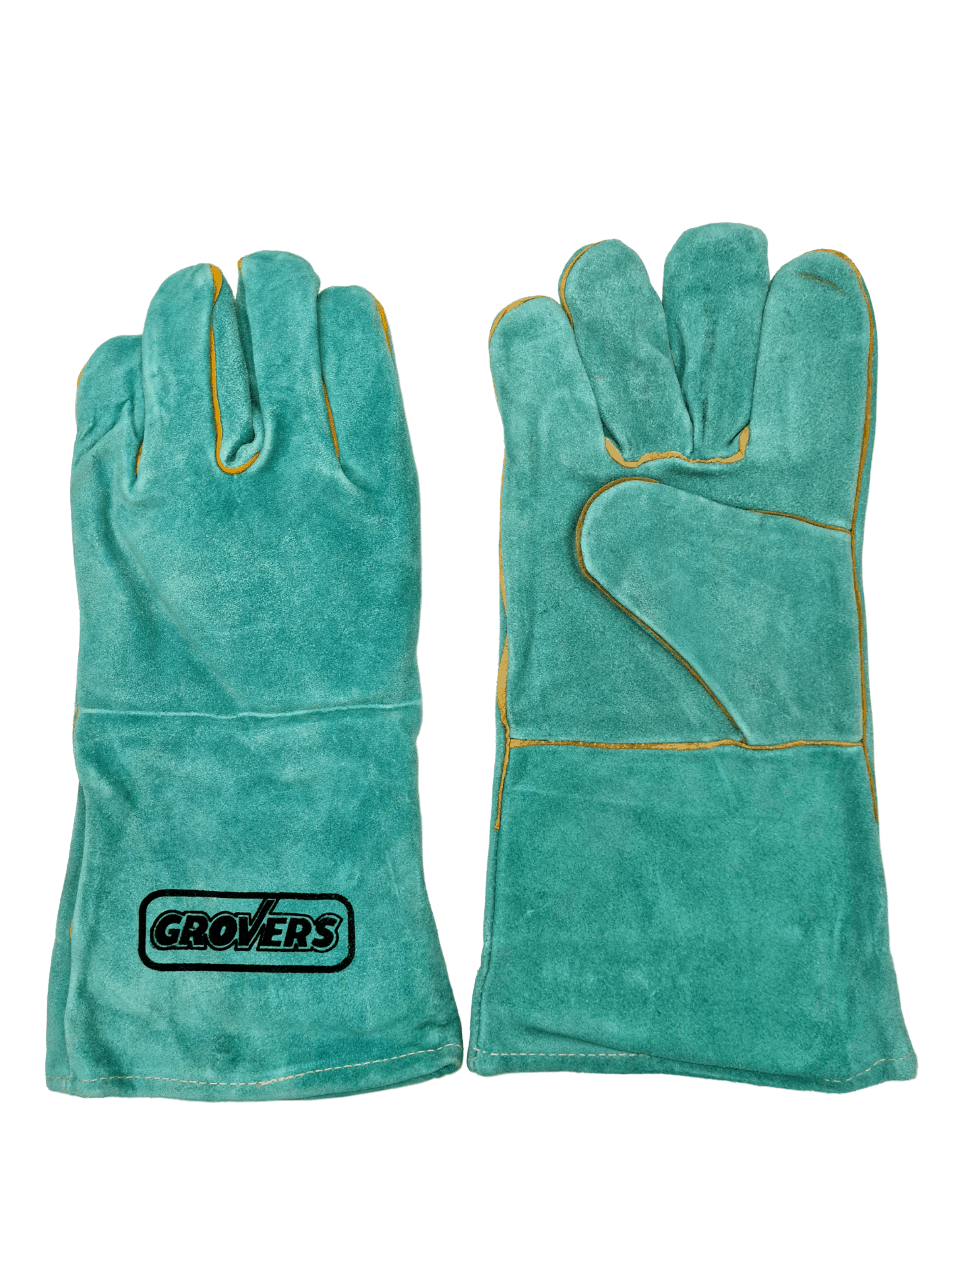 Перчатки с крагой (S-796) Long Gloves, р-р 10